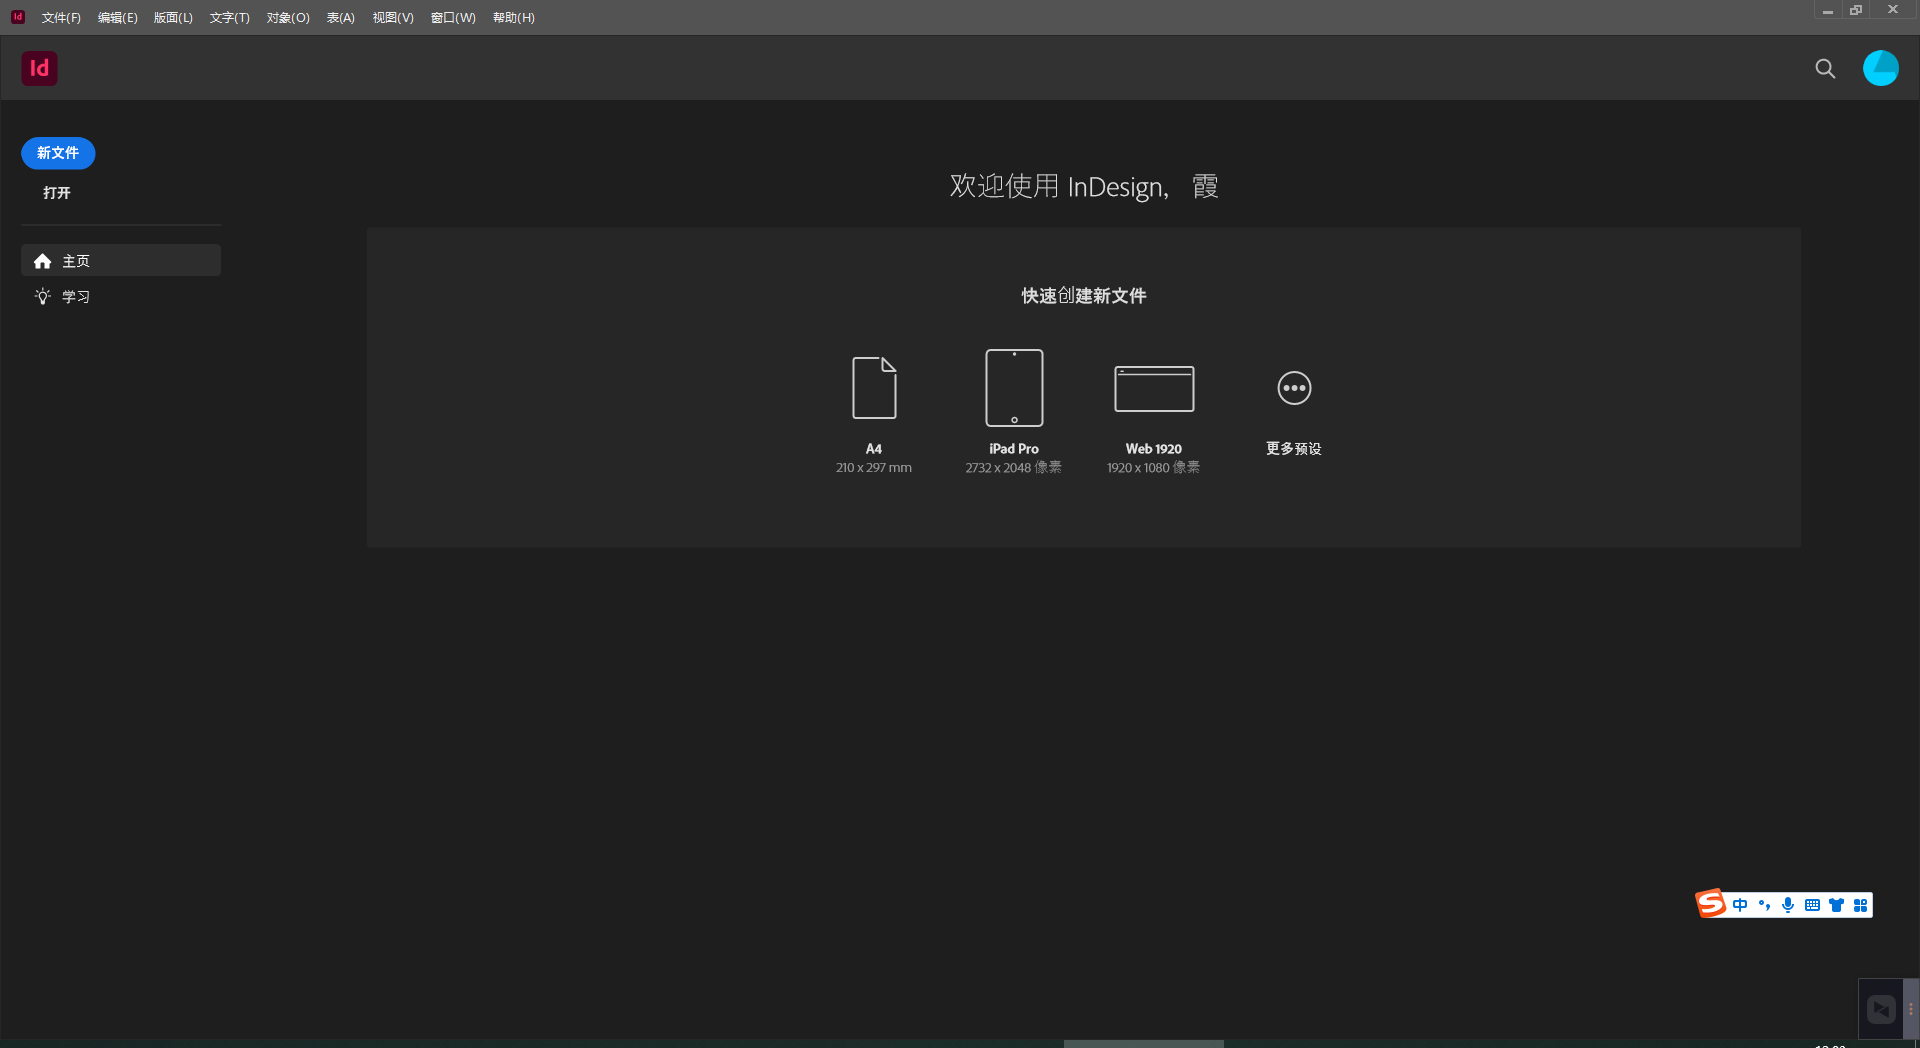 Adobe InDesign 2023 v18.5.0.57 download